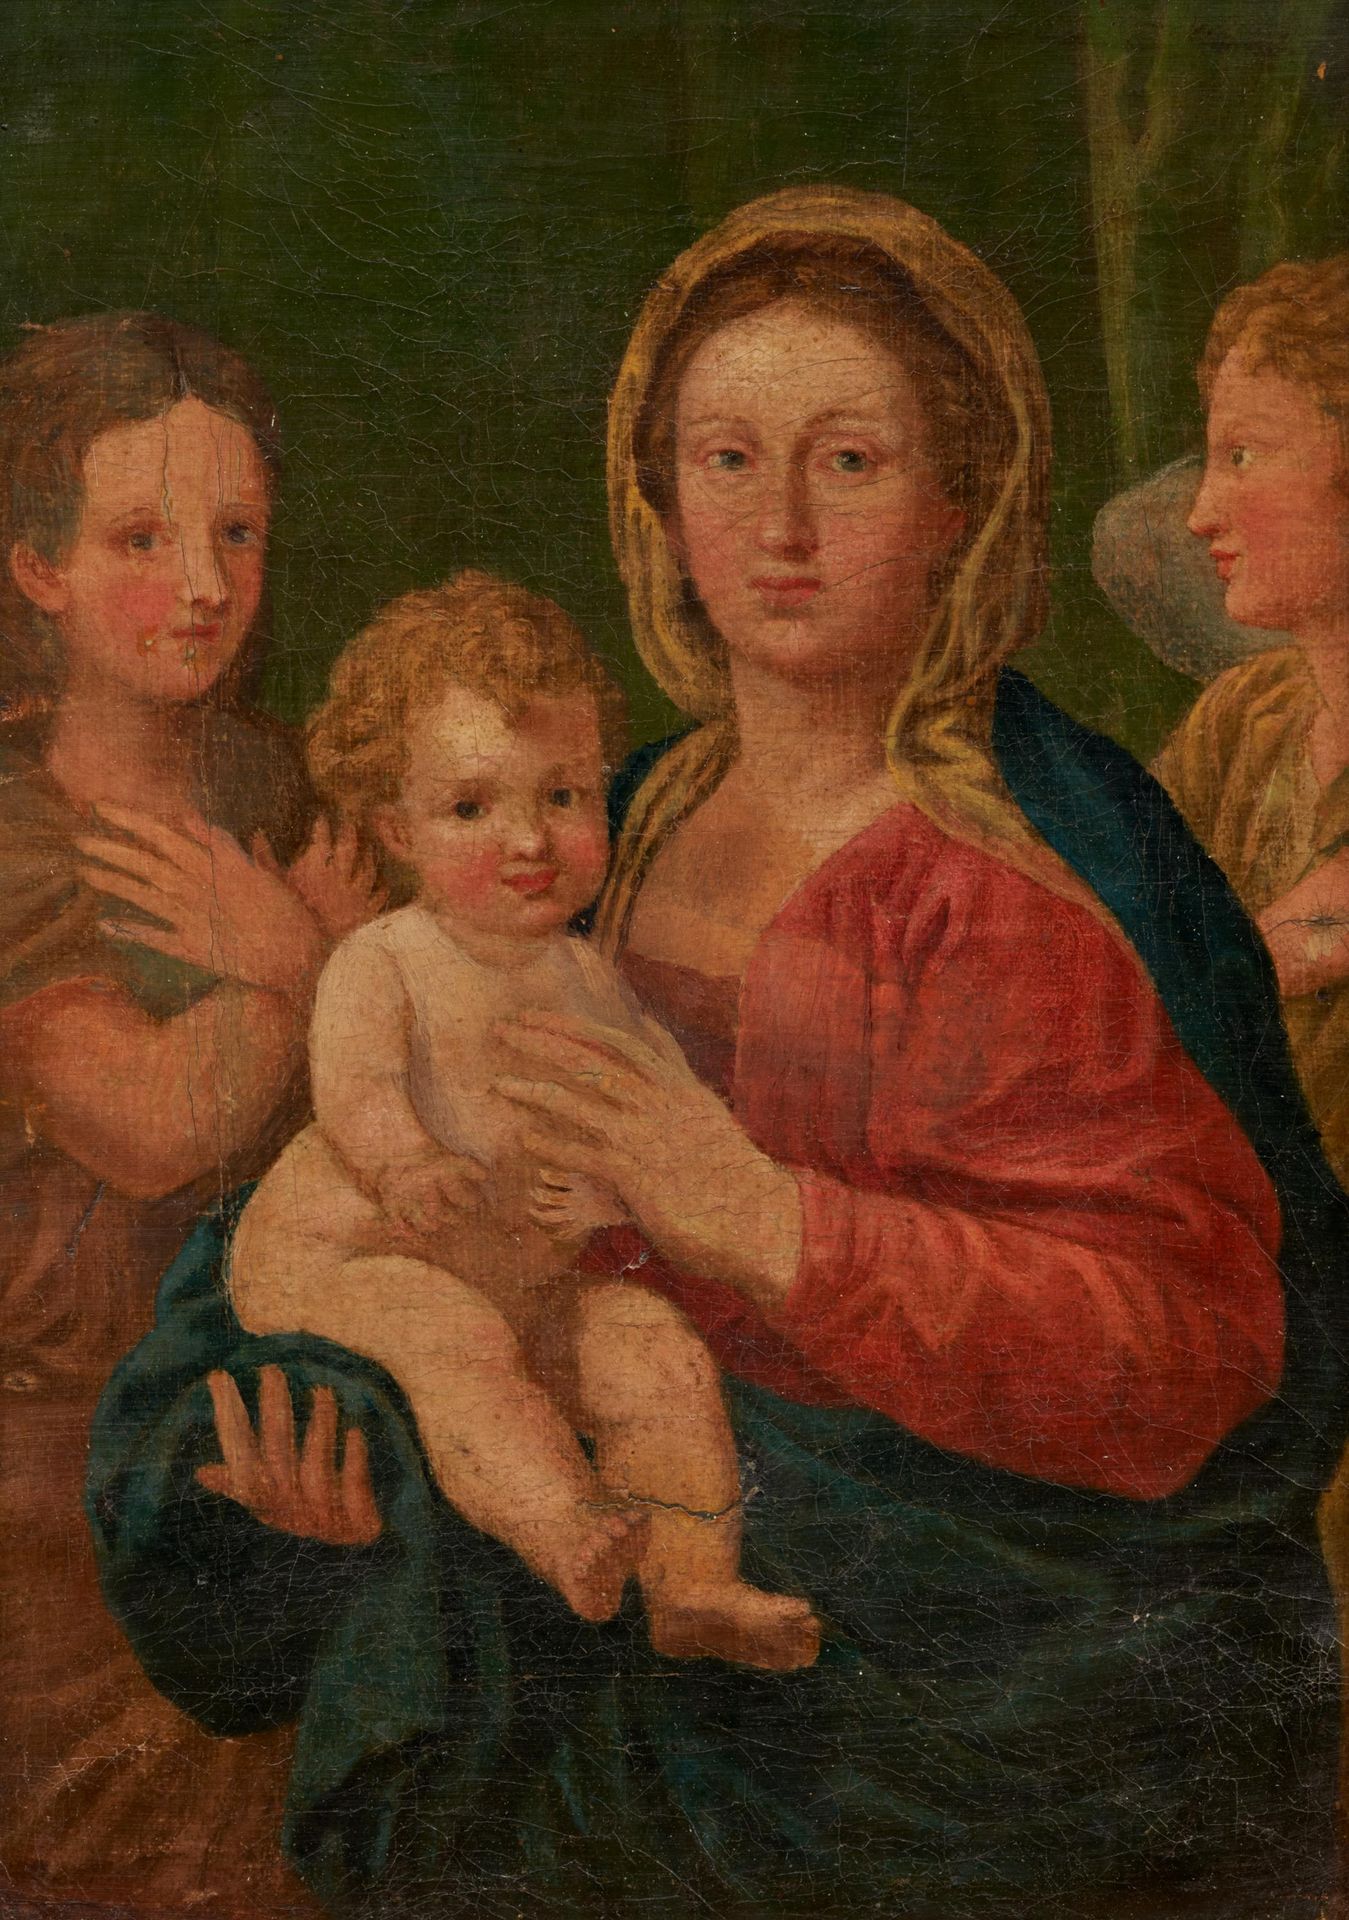 Deutsche Schule ESCUELA ALEMANA
1er h. S. XIX
Título: María con el Niño Jesús y &hellip;